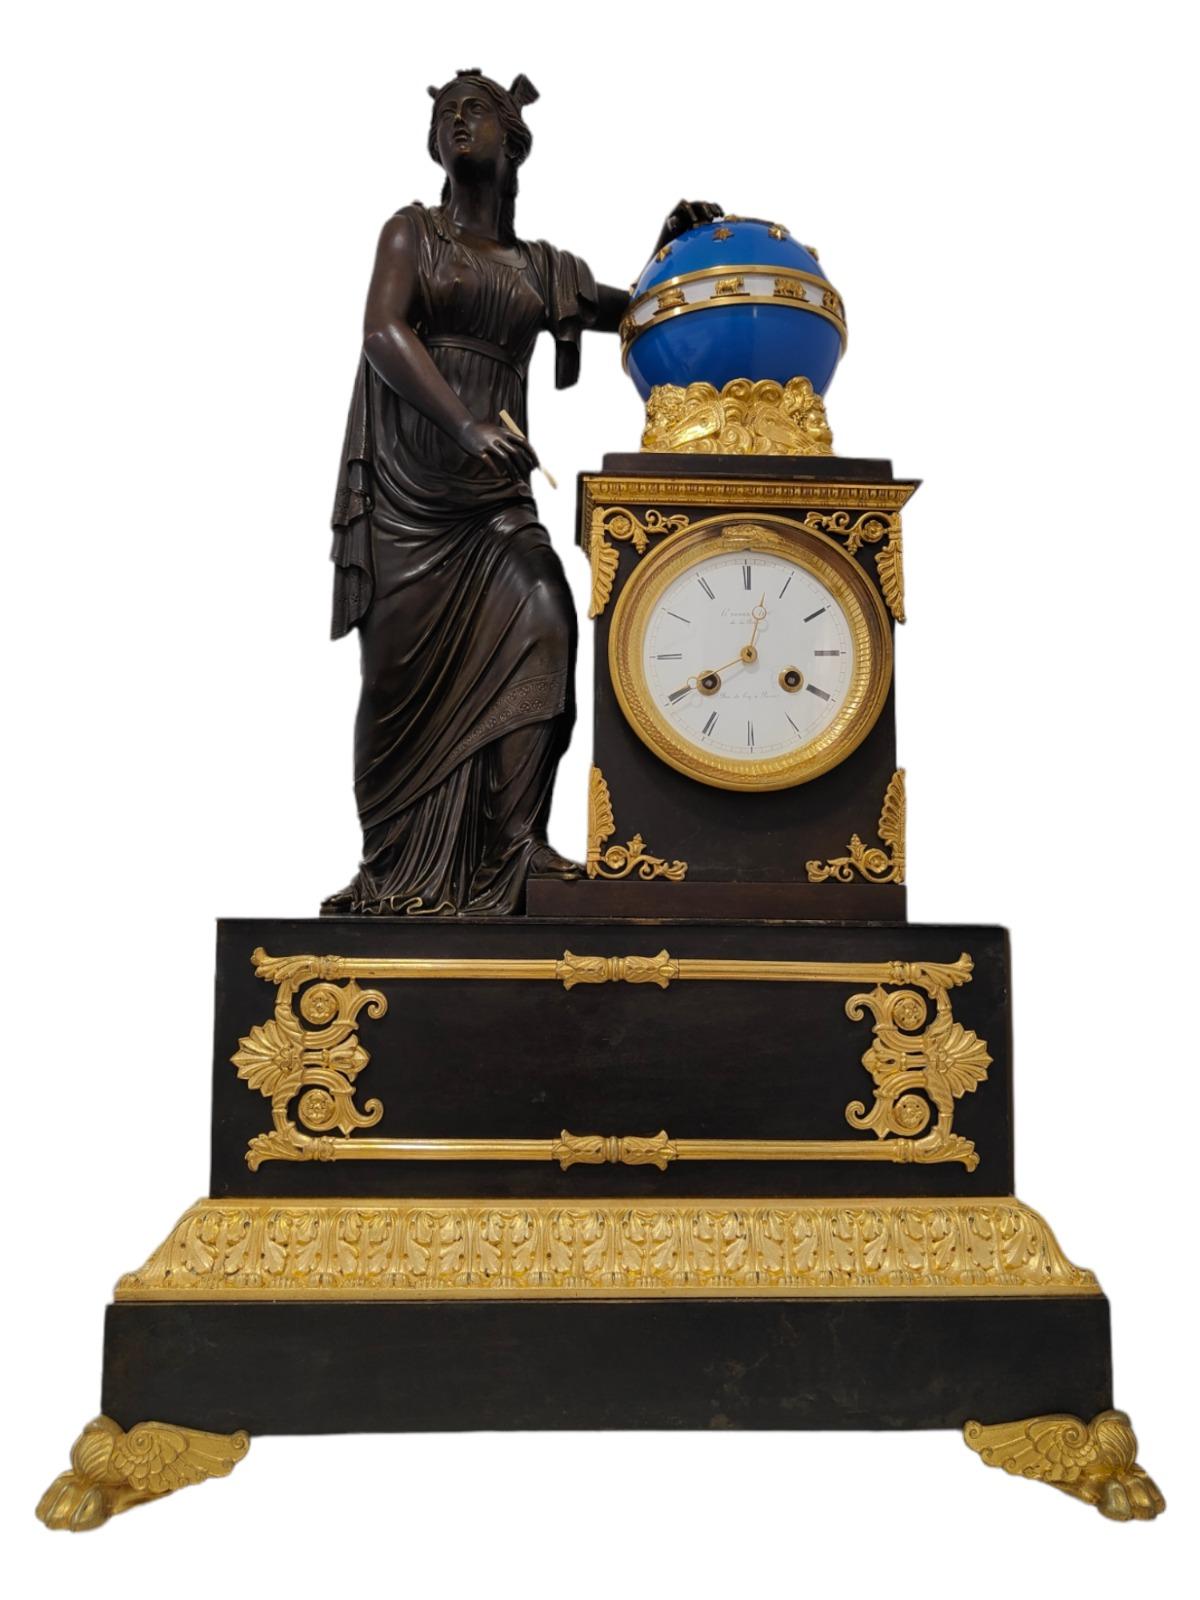 Pendule de cheminée Empire par H.Robert-Horloger De La Reine, Paris, datant d'environ 1820-1830
Superbe pendule de cheminée Empire en bronze doré et patiné de huit jours, signée sur le cadran en émail blanc H.Robert-Horloger à la Reine. Le cadran